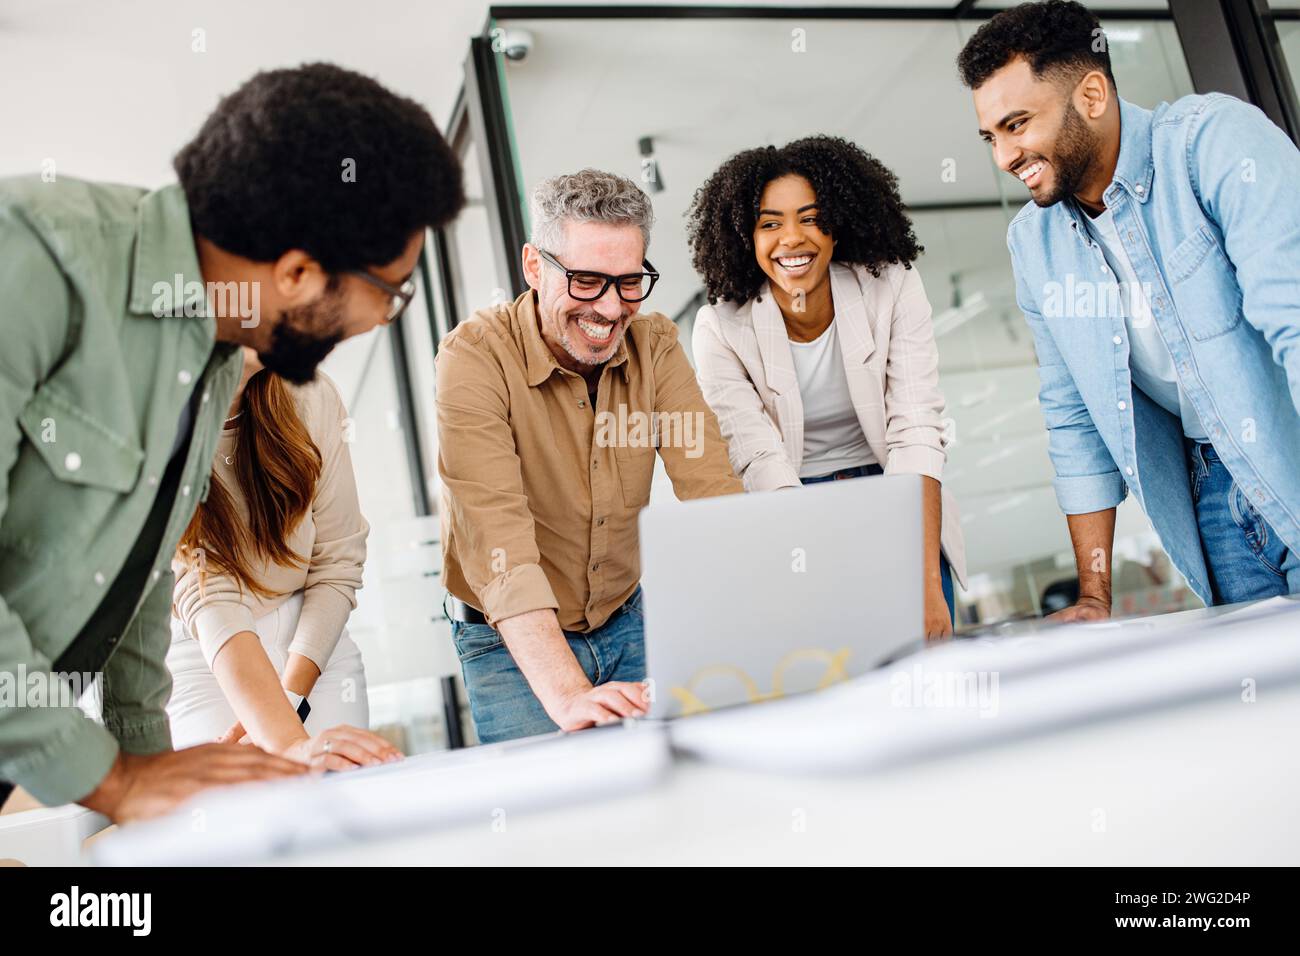 Eine fröhliche Gruppe verschiedener Kollegen lehnt sich um einen Laptop herum, was auf eine interaktive Diskussion über die Technik und die Stimmung eines produktiven und zukunftsorientierten Teams hindeutet. Stockfoto